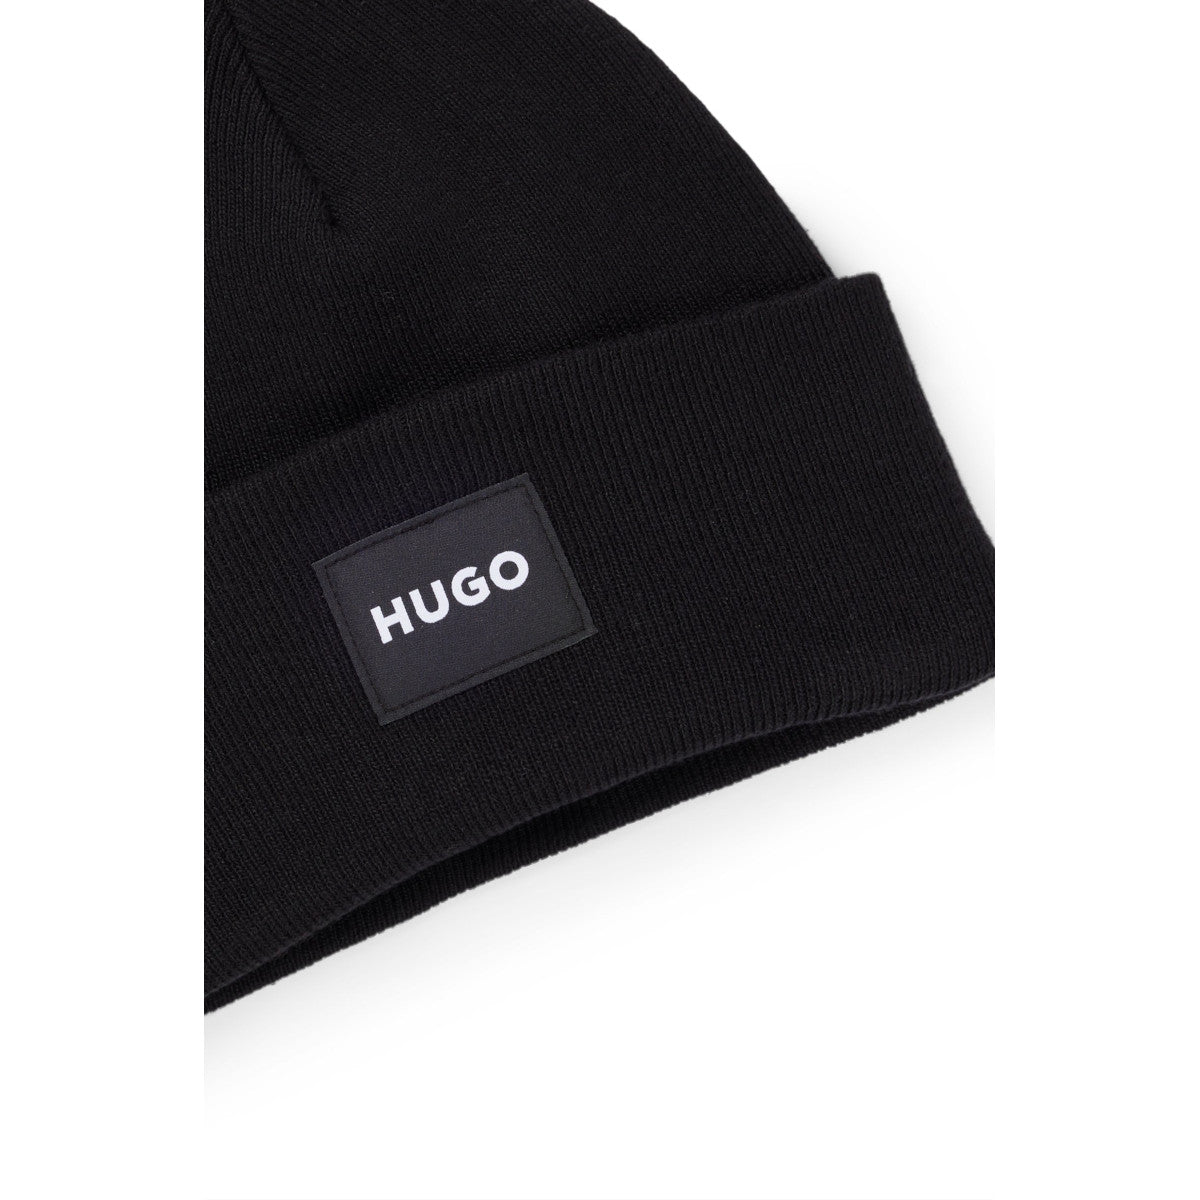 HUGO Xevon Hat 001 Black